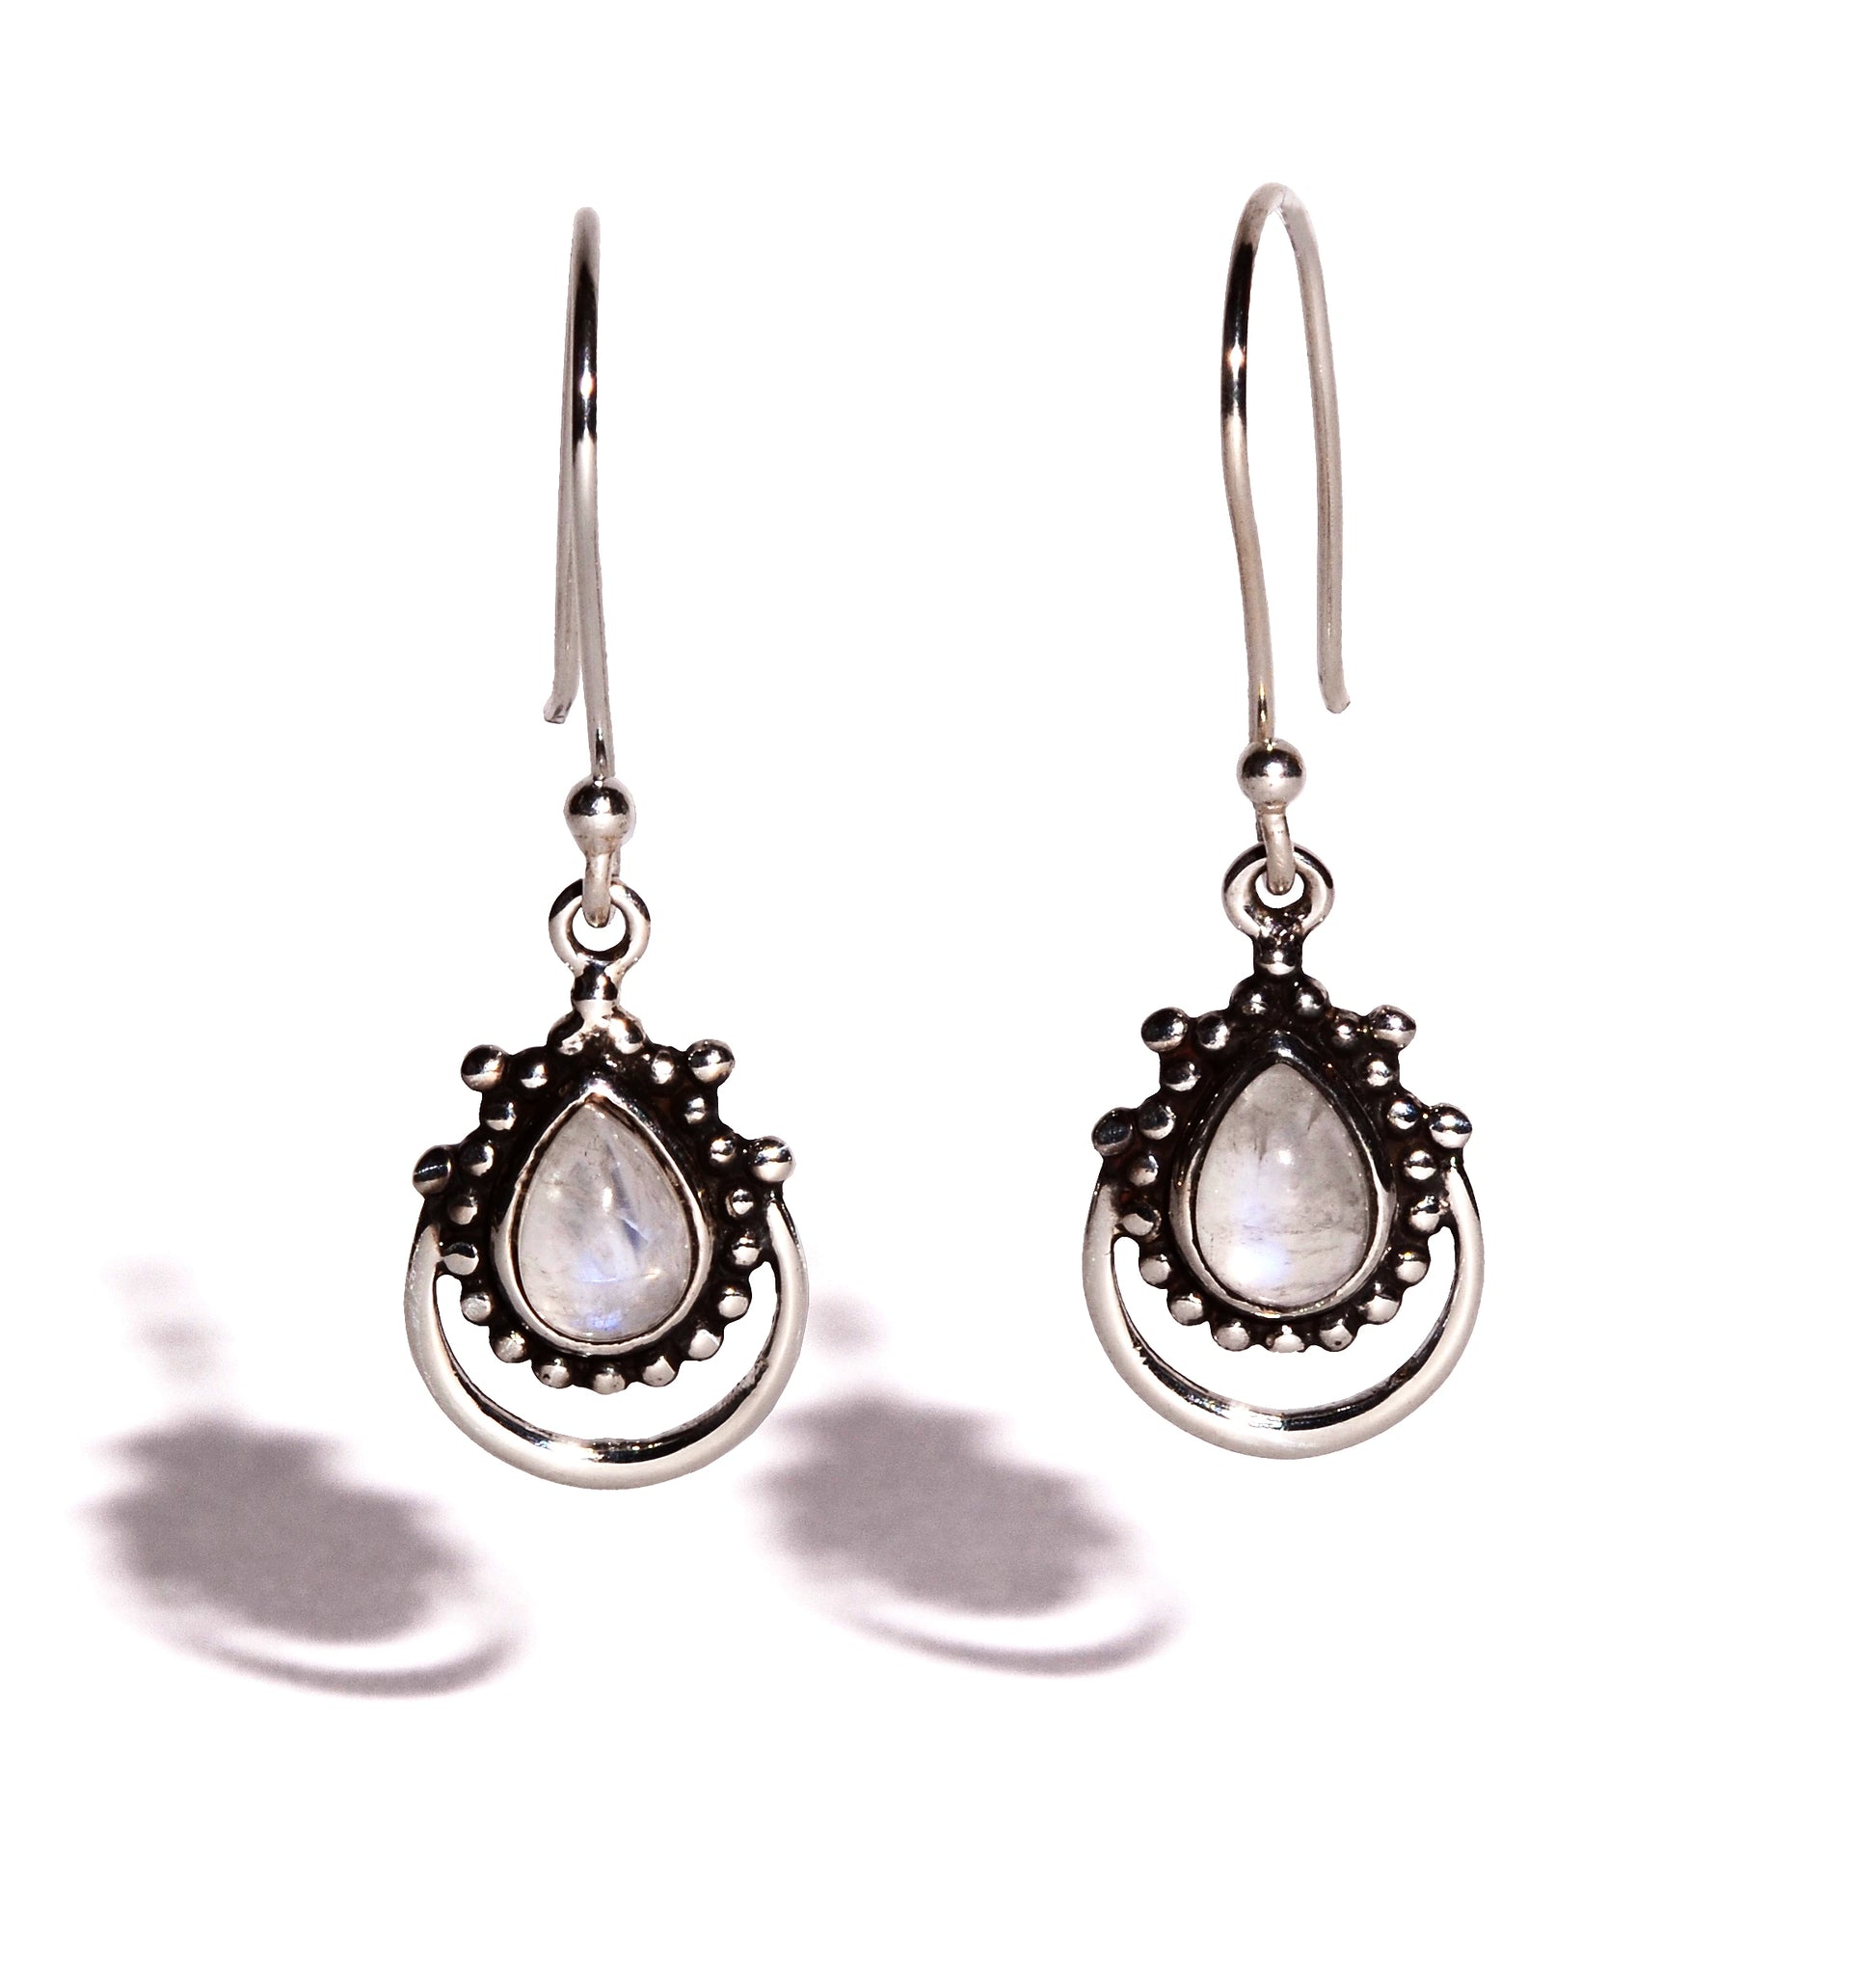 Rainbow Moonstone Sterling Silver Earrings - Teardrop Crystals